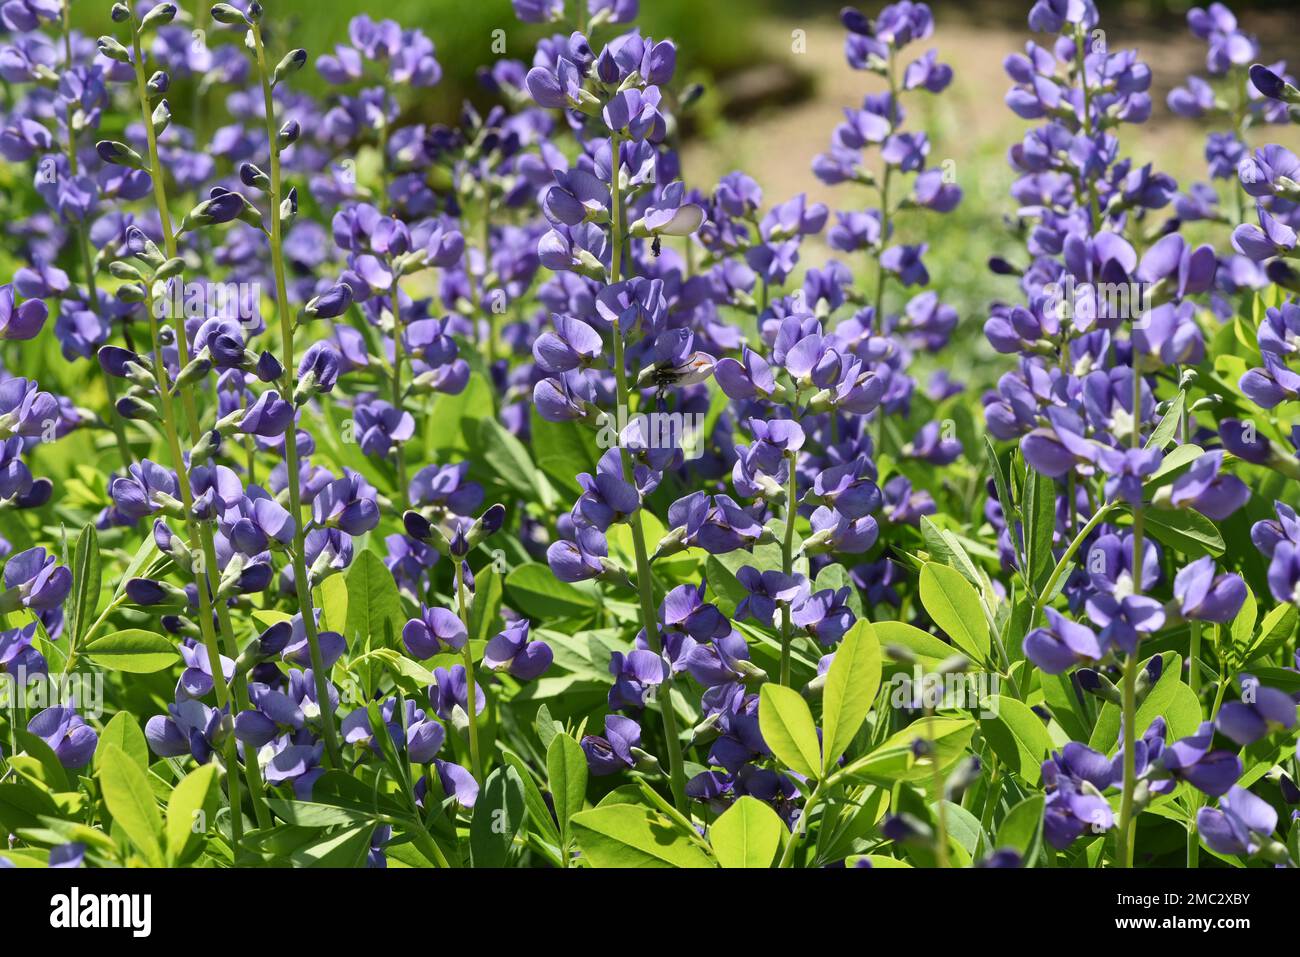 Faerberhuelse, Baptizia tinctoria, ist eine wichtige Heilpflanze mit blauen Bluten und wird viel in der Medizin verwendet. Sie ist eine Staude und ge Banque D'Images